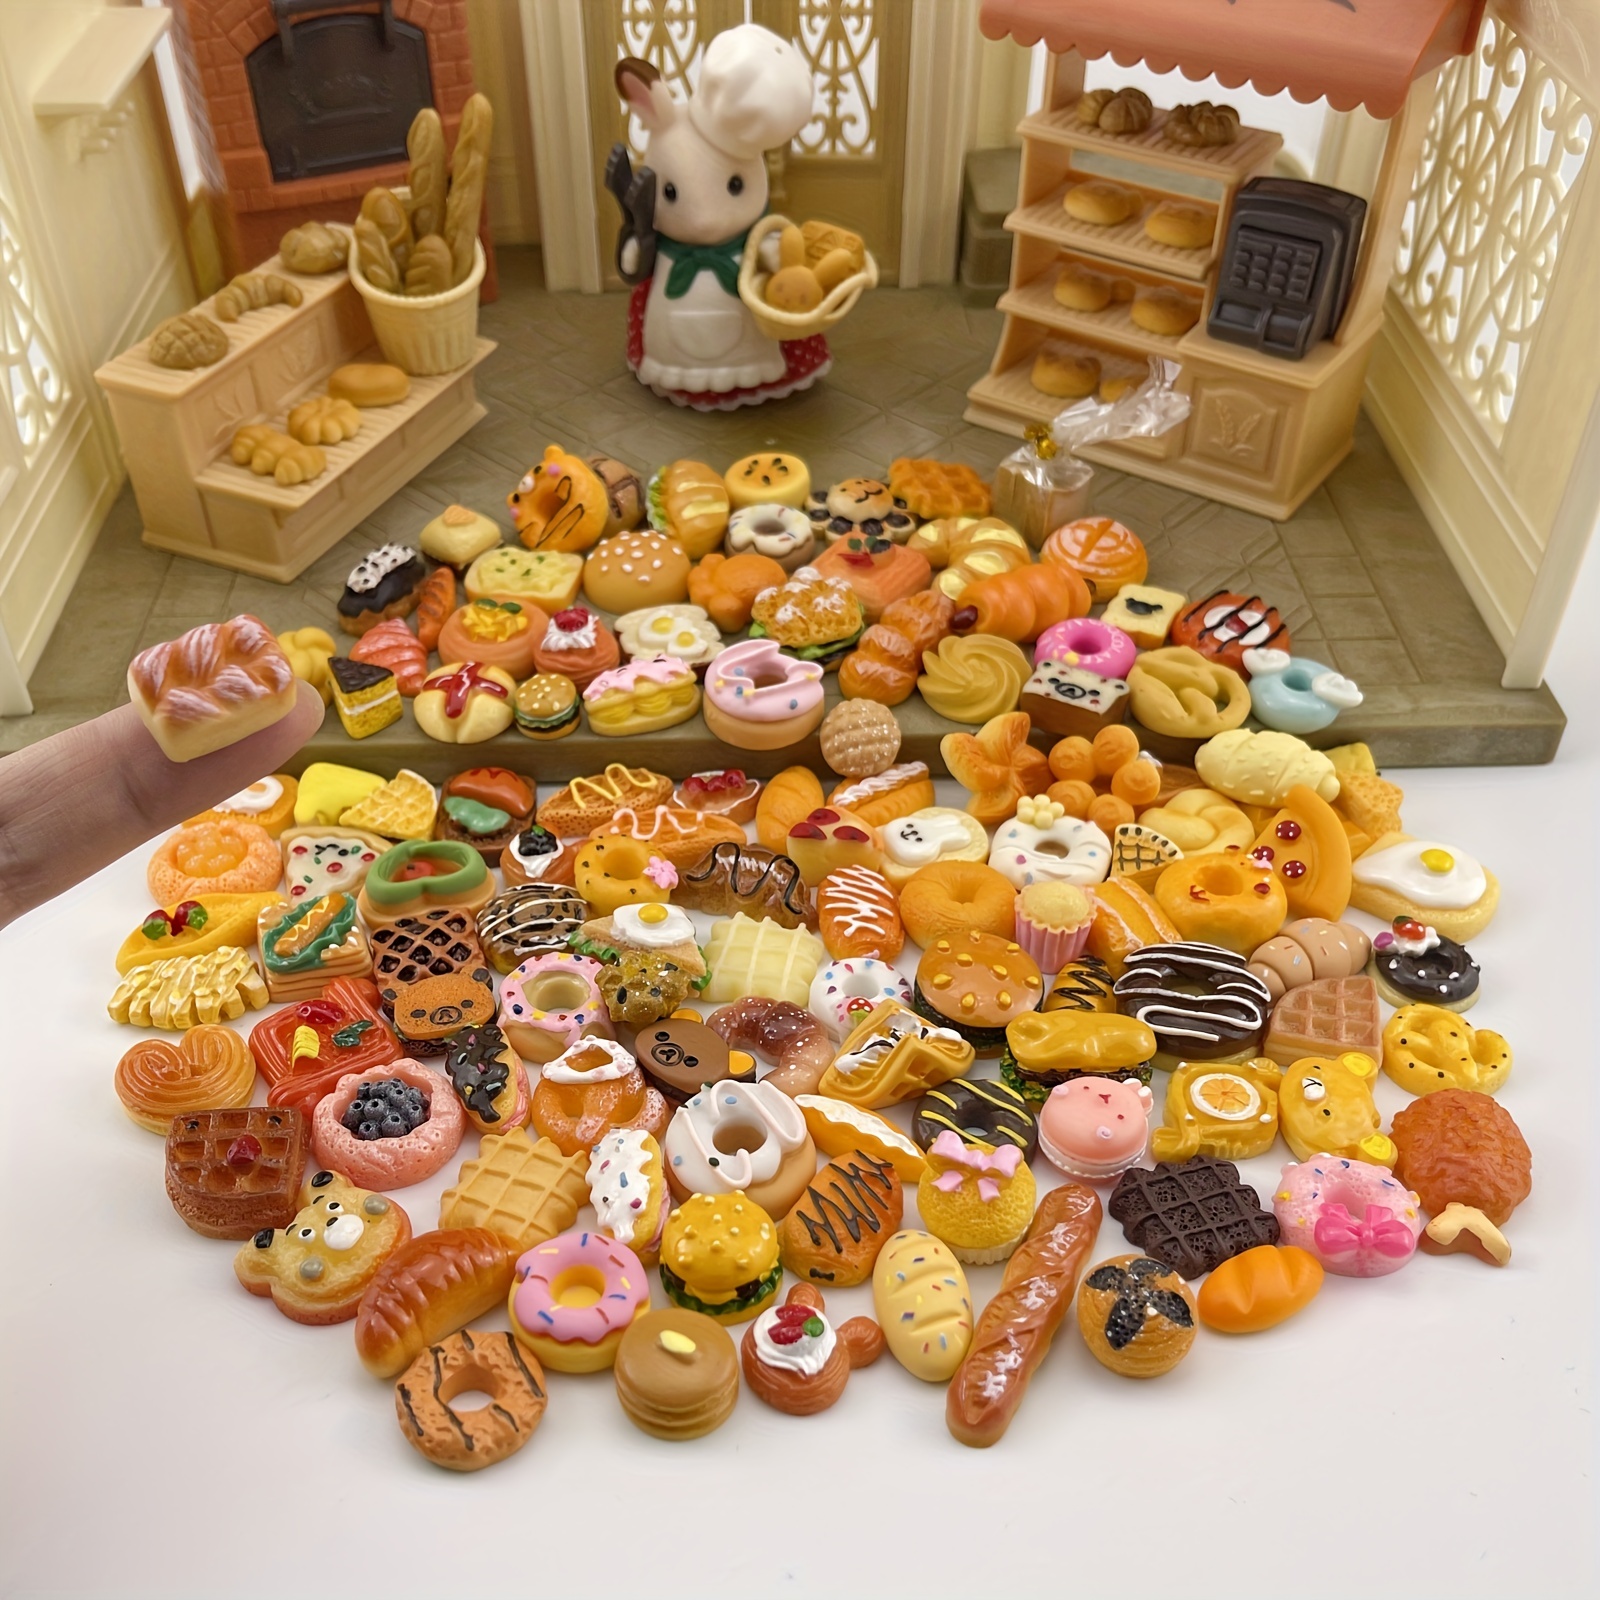 10 個/20 個/30 個ミニパンミニチュア食品モデルドールハウスアクセサリー人形アクセサリー子供のおもちゃ